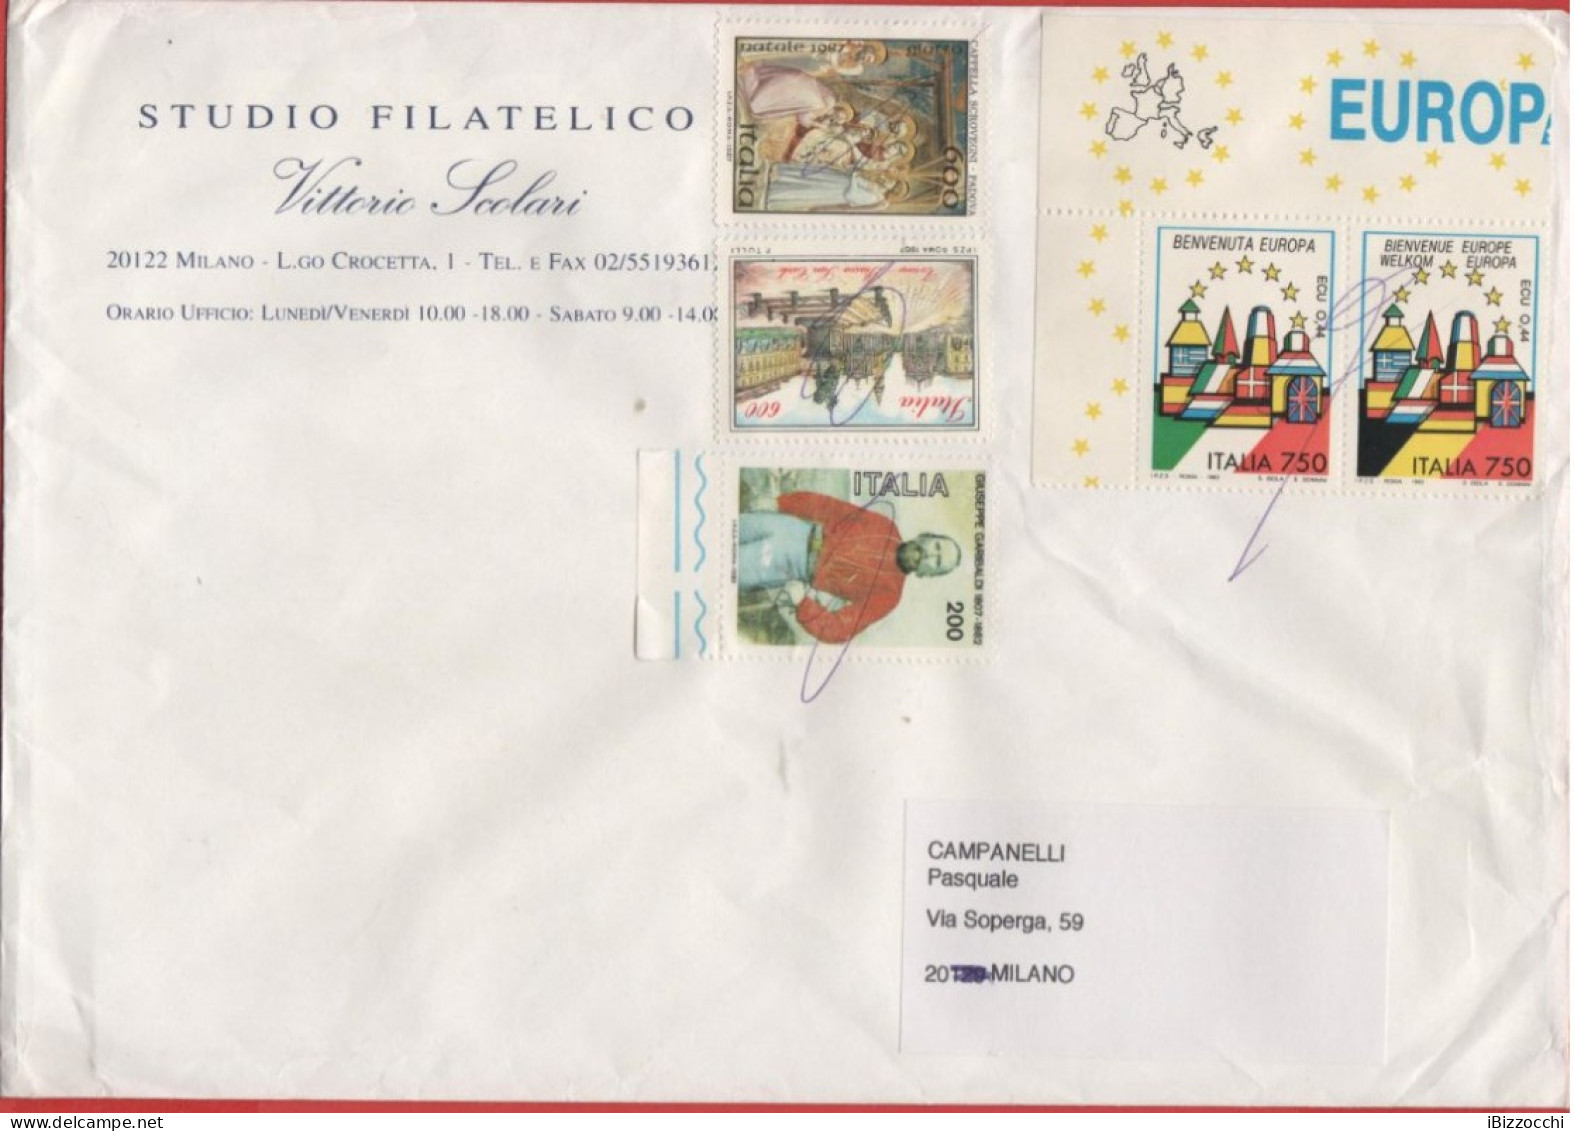 ITALIA - Storia Postale Repubblica - 2011 (Annullo A Penna) - 5 Francobolli Dal 1982 Al 1993 - Studio Filatelico Scolari - 2011-20: Storia Postale